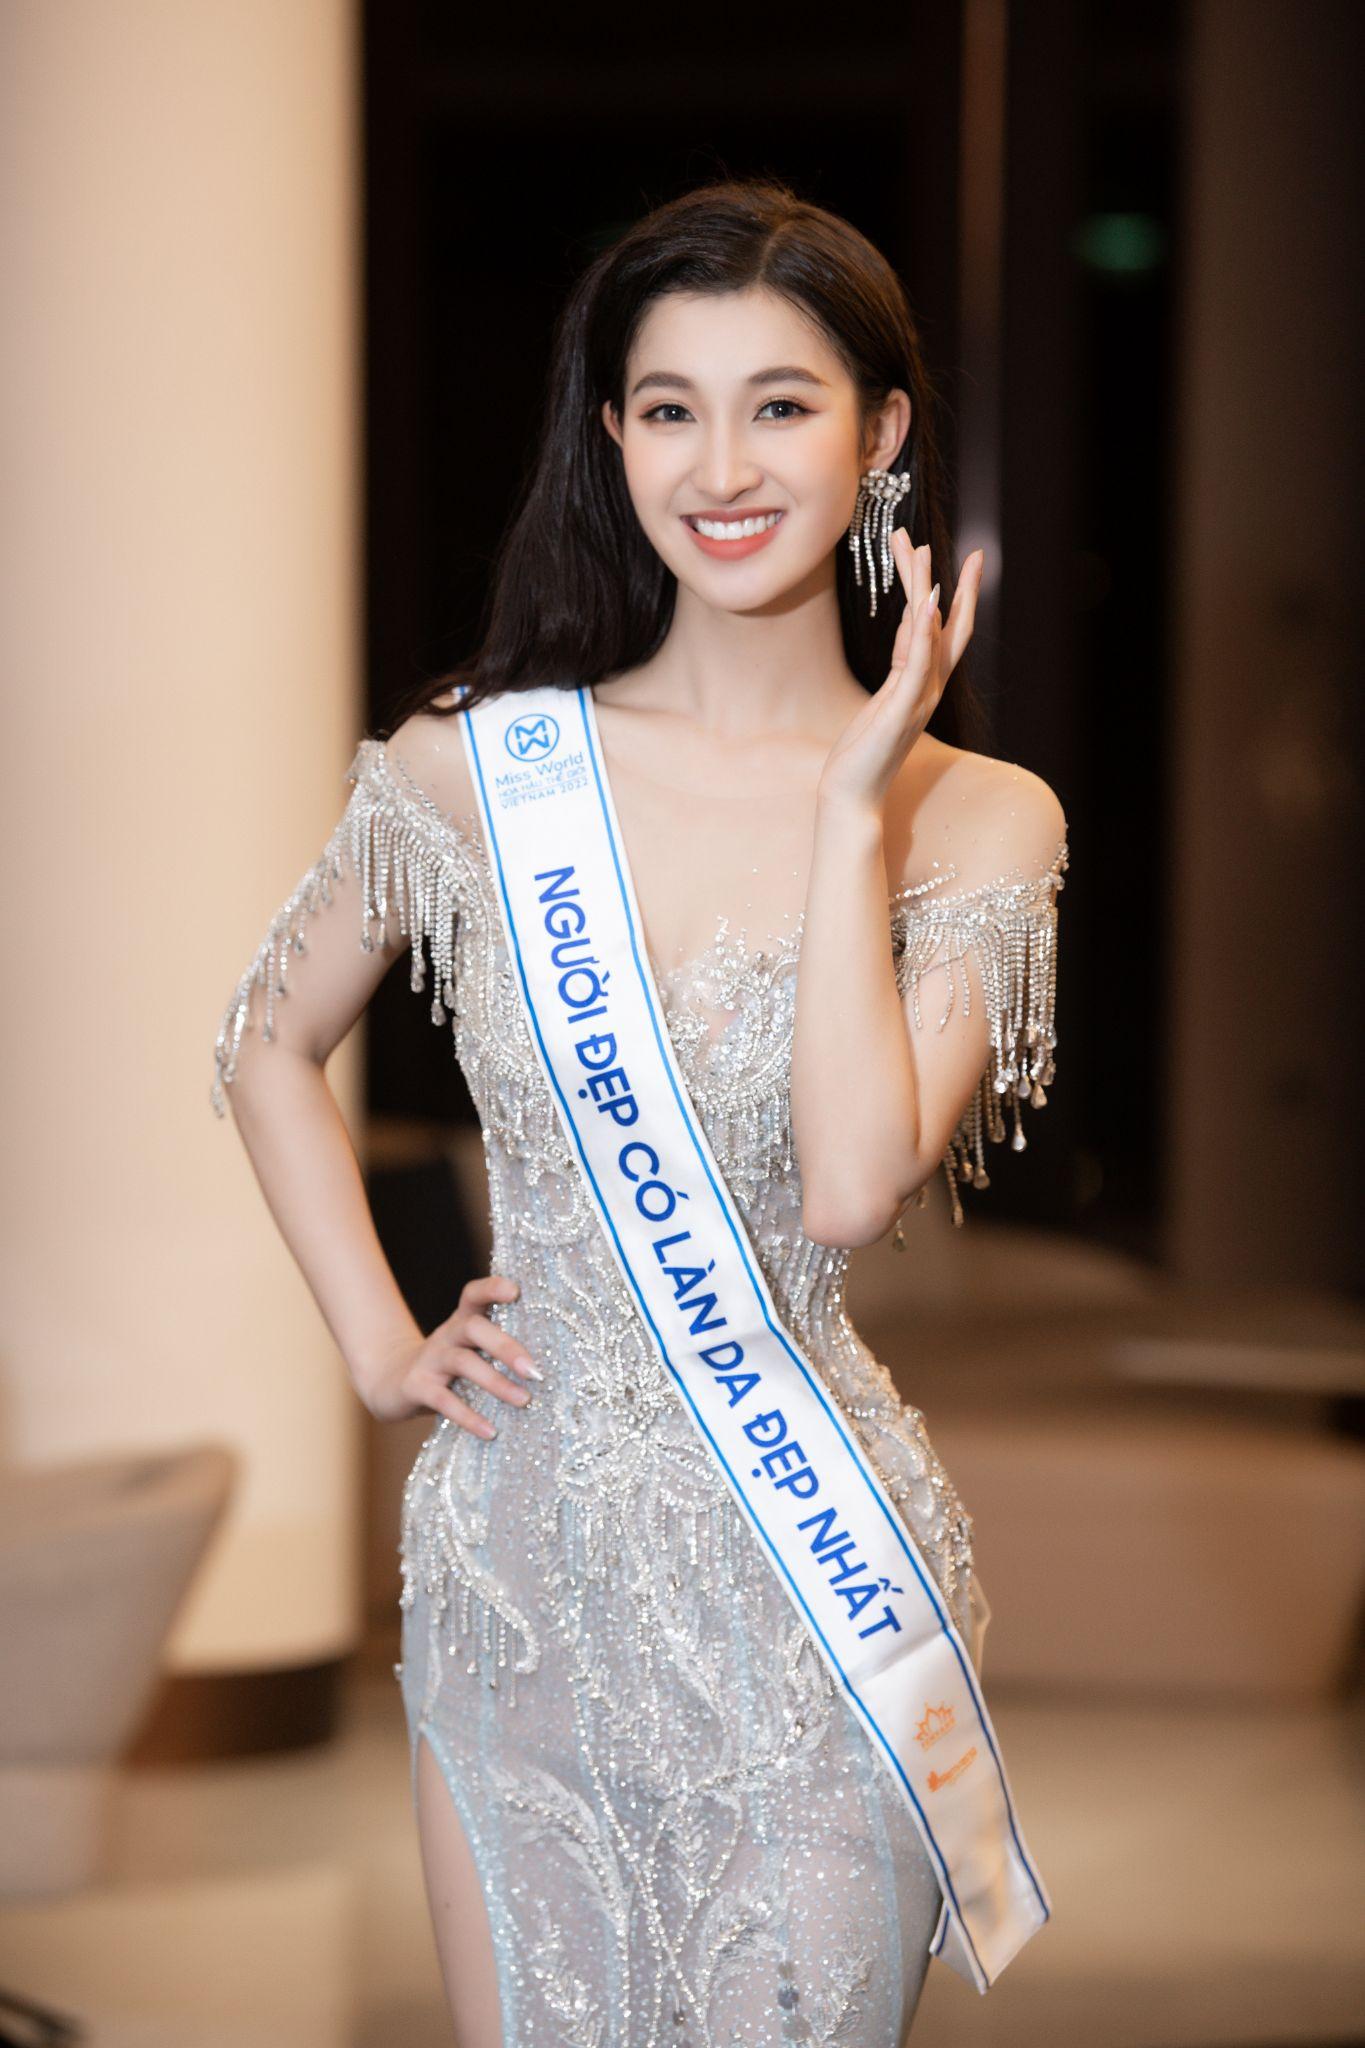 Hành trình mỹ phẩm thuần chay Artistry nâng niu làn da Hoa hậu cùng Top 3 Miss World Vietnam 2022 - Ảnh 4.